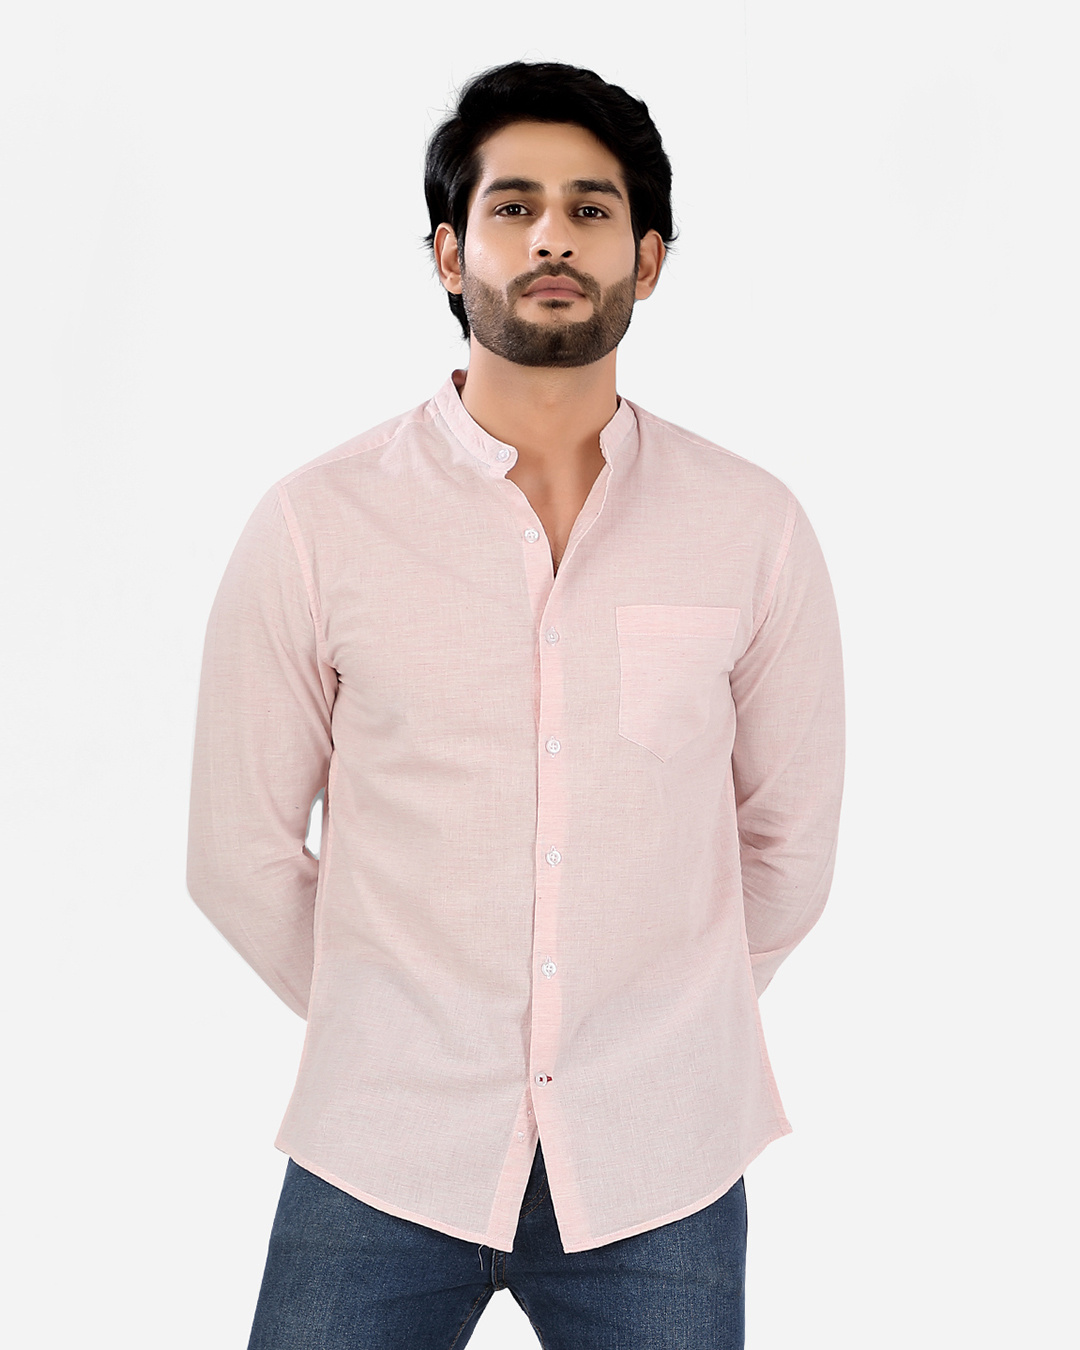 Buy Men's Pink Shirt Online at Bewakoof